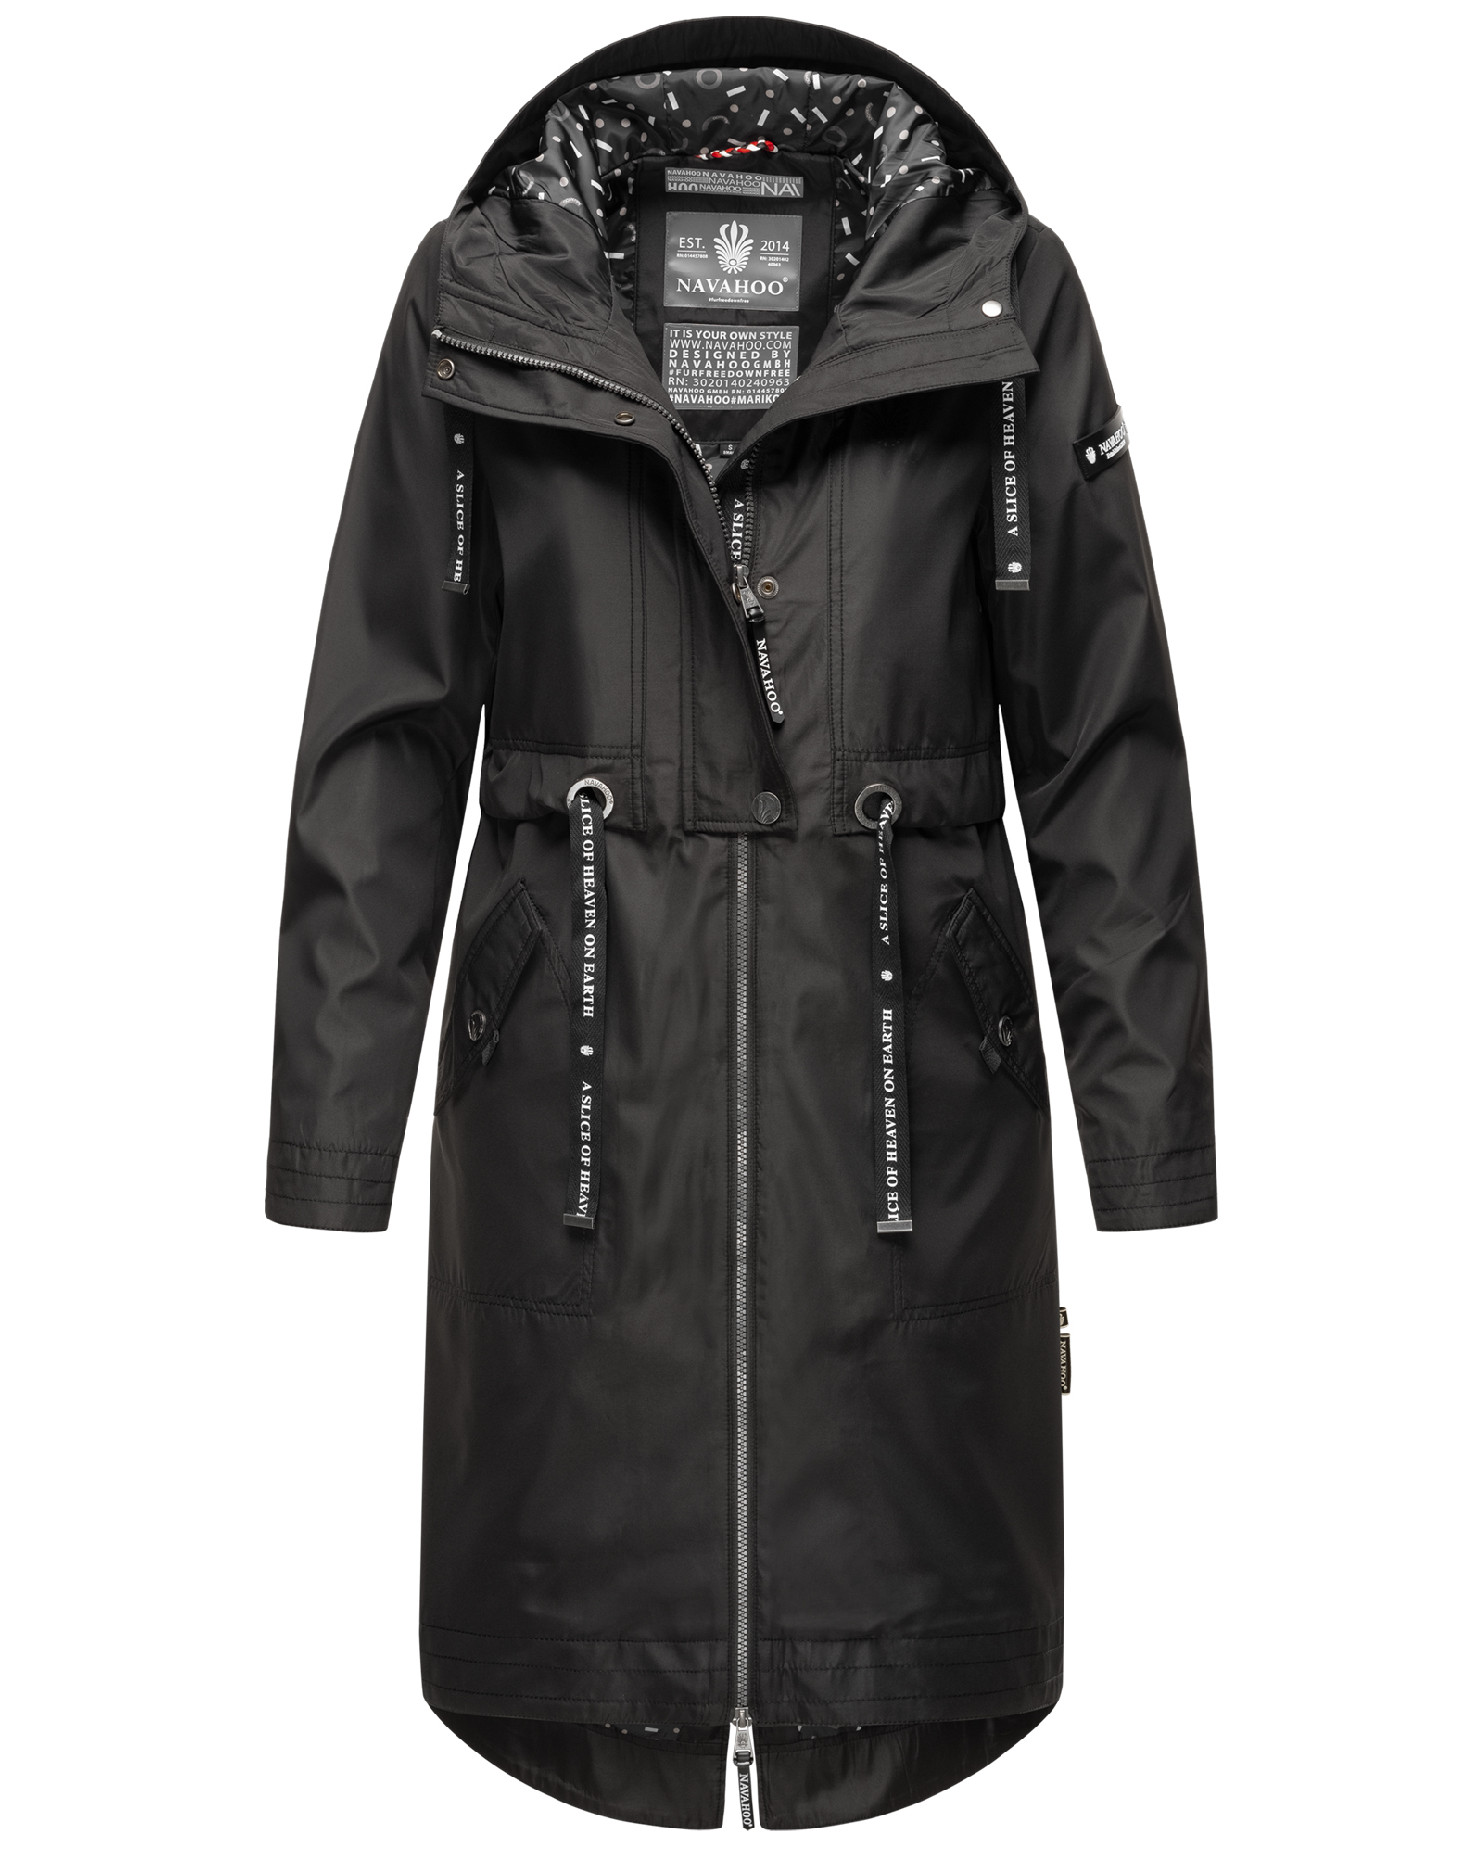 Dámský kabát s kapucí Josinaa Navahoo - BLACK Velikost: 3XL